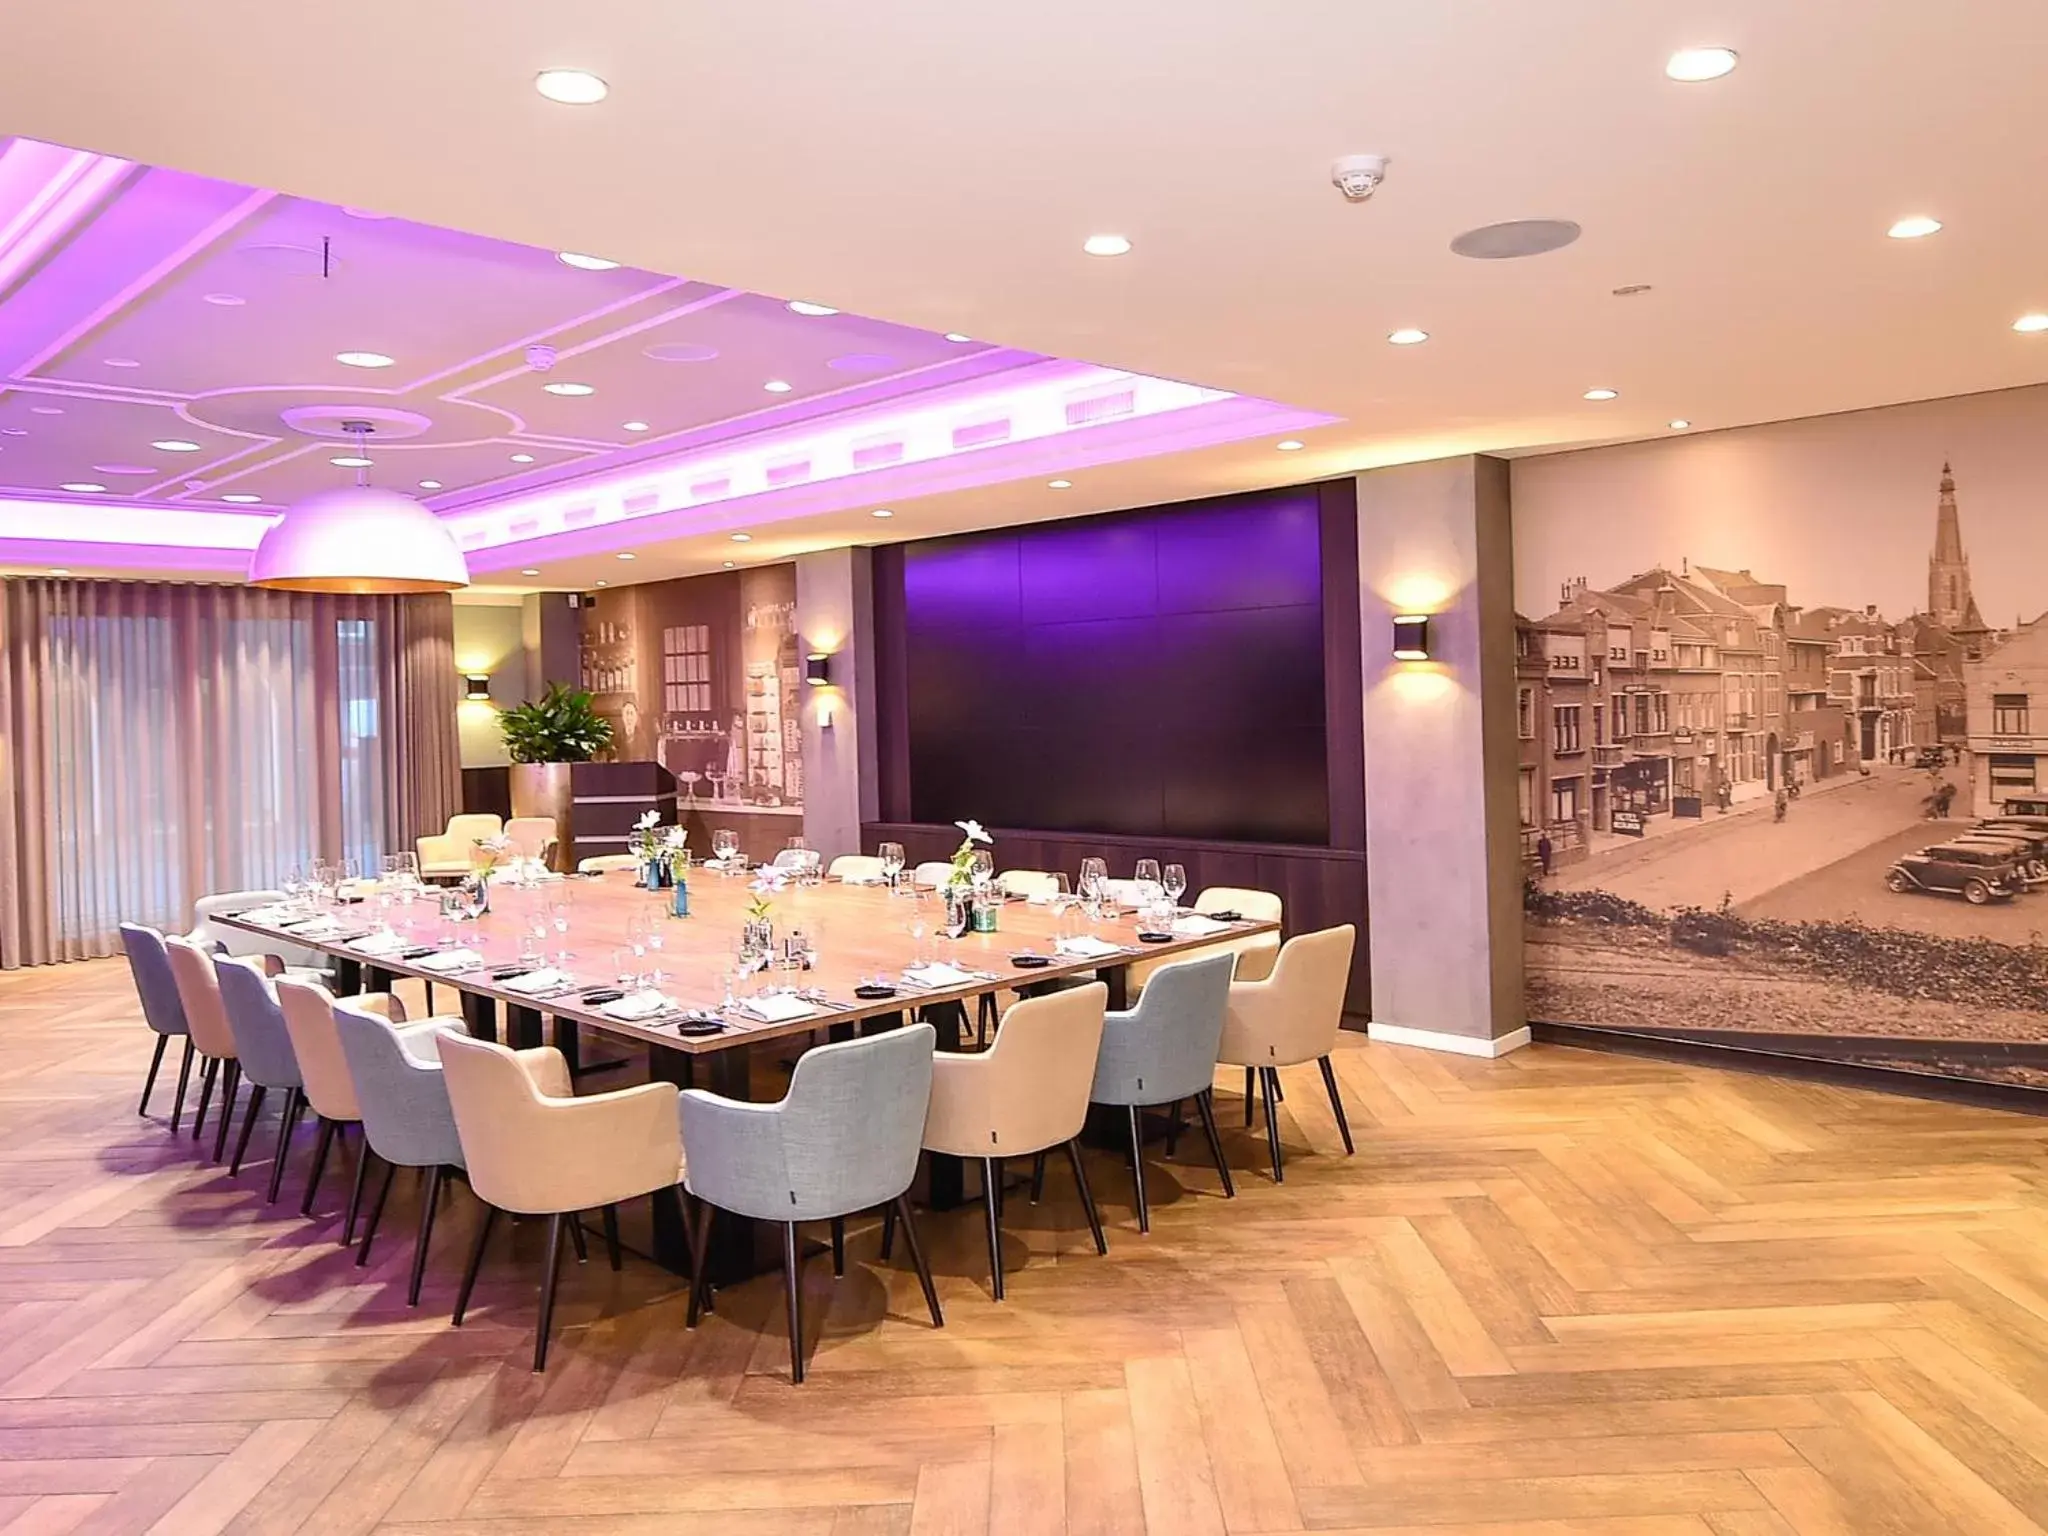 Meeting/conference room, Banquet Facilities in Brasserie-Hotel Antje van de Statie